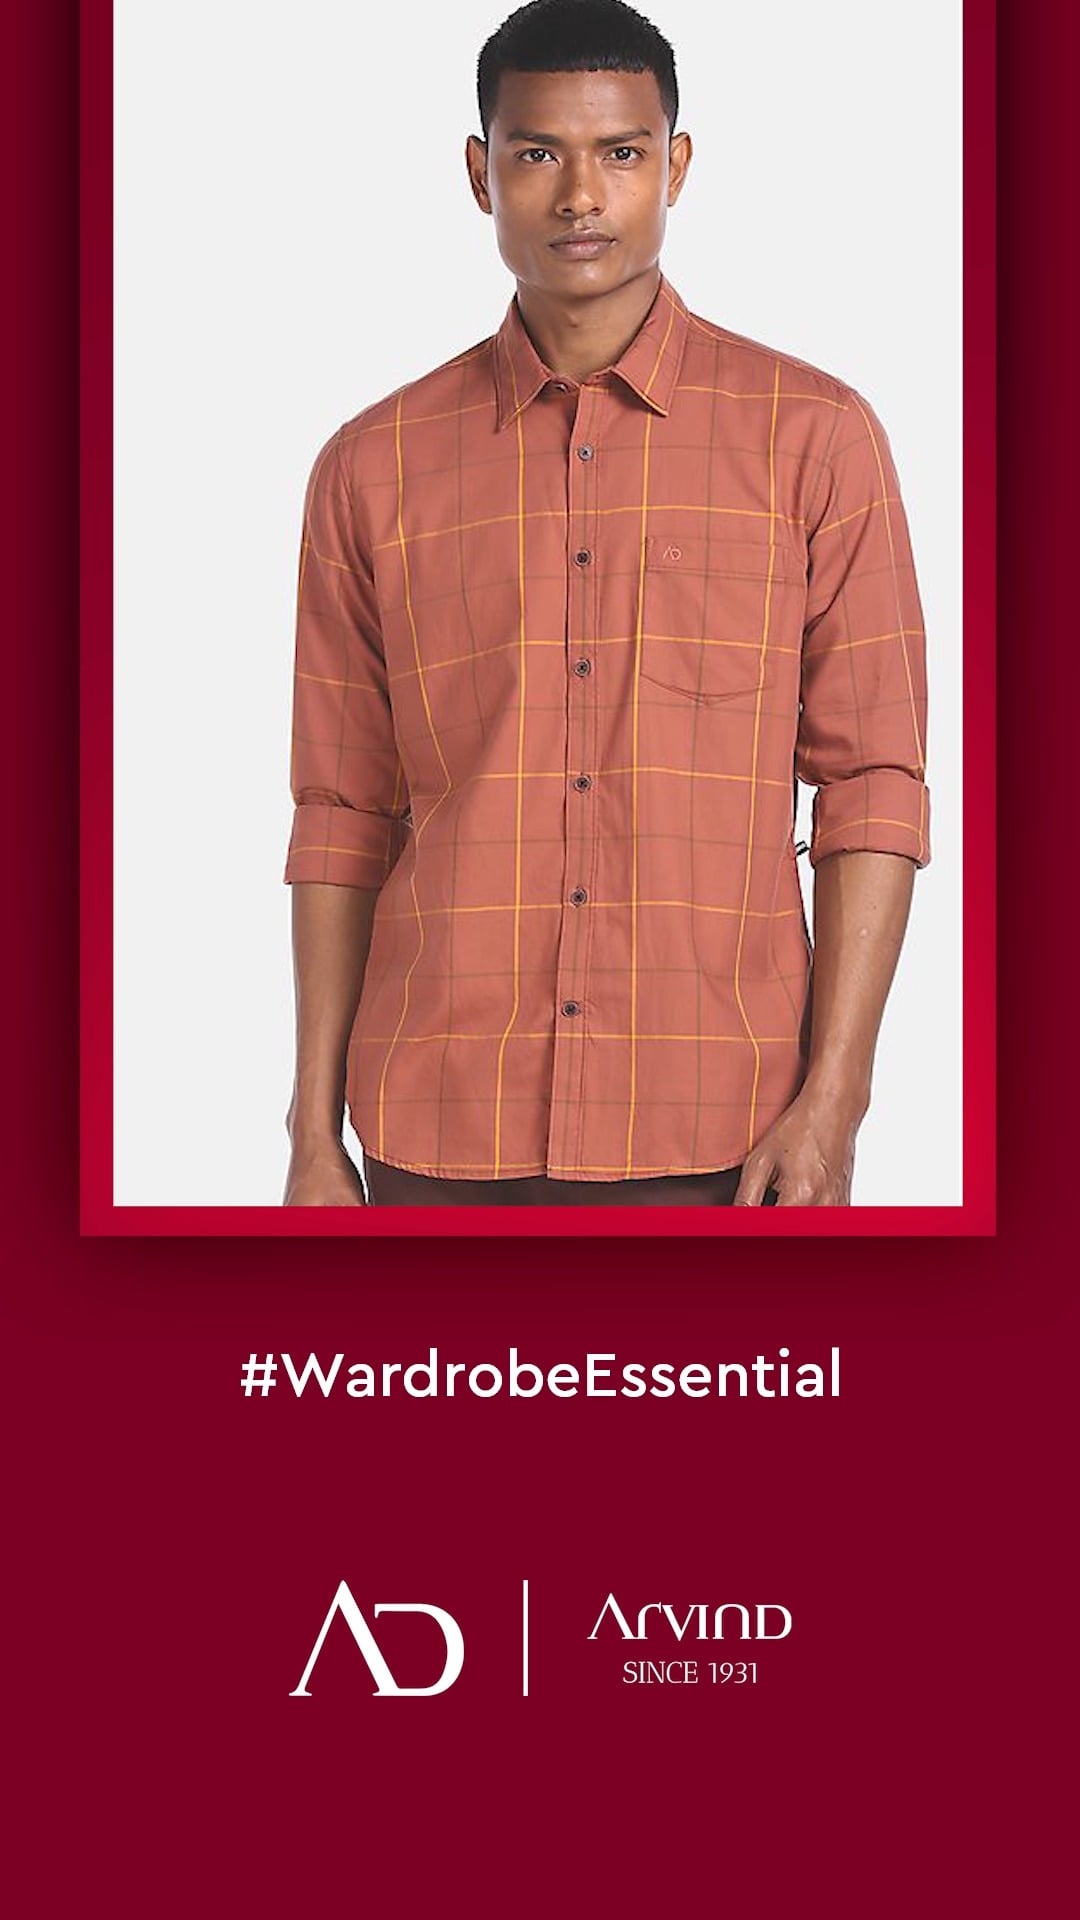 Here is the basic wardrobe checklist!
Explore more on: arvind.nnnow.com

#Arvind #FashioningPossibilities #WardrobeEssentials #Checks #CheckShirts #ADByArvind #DressingEssentials #EverydayOutfits #MensWear #ClassicStyles #StyleEssentials #GentlemanStyle